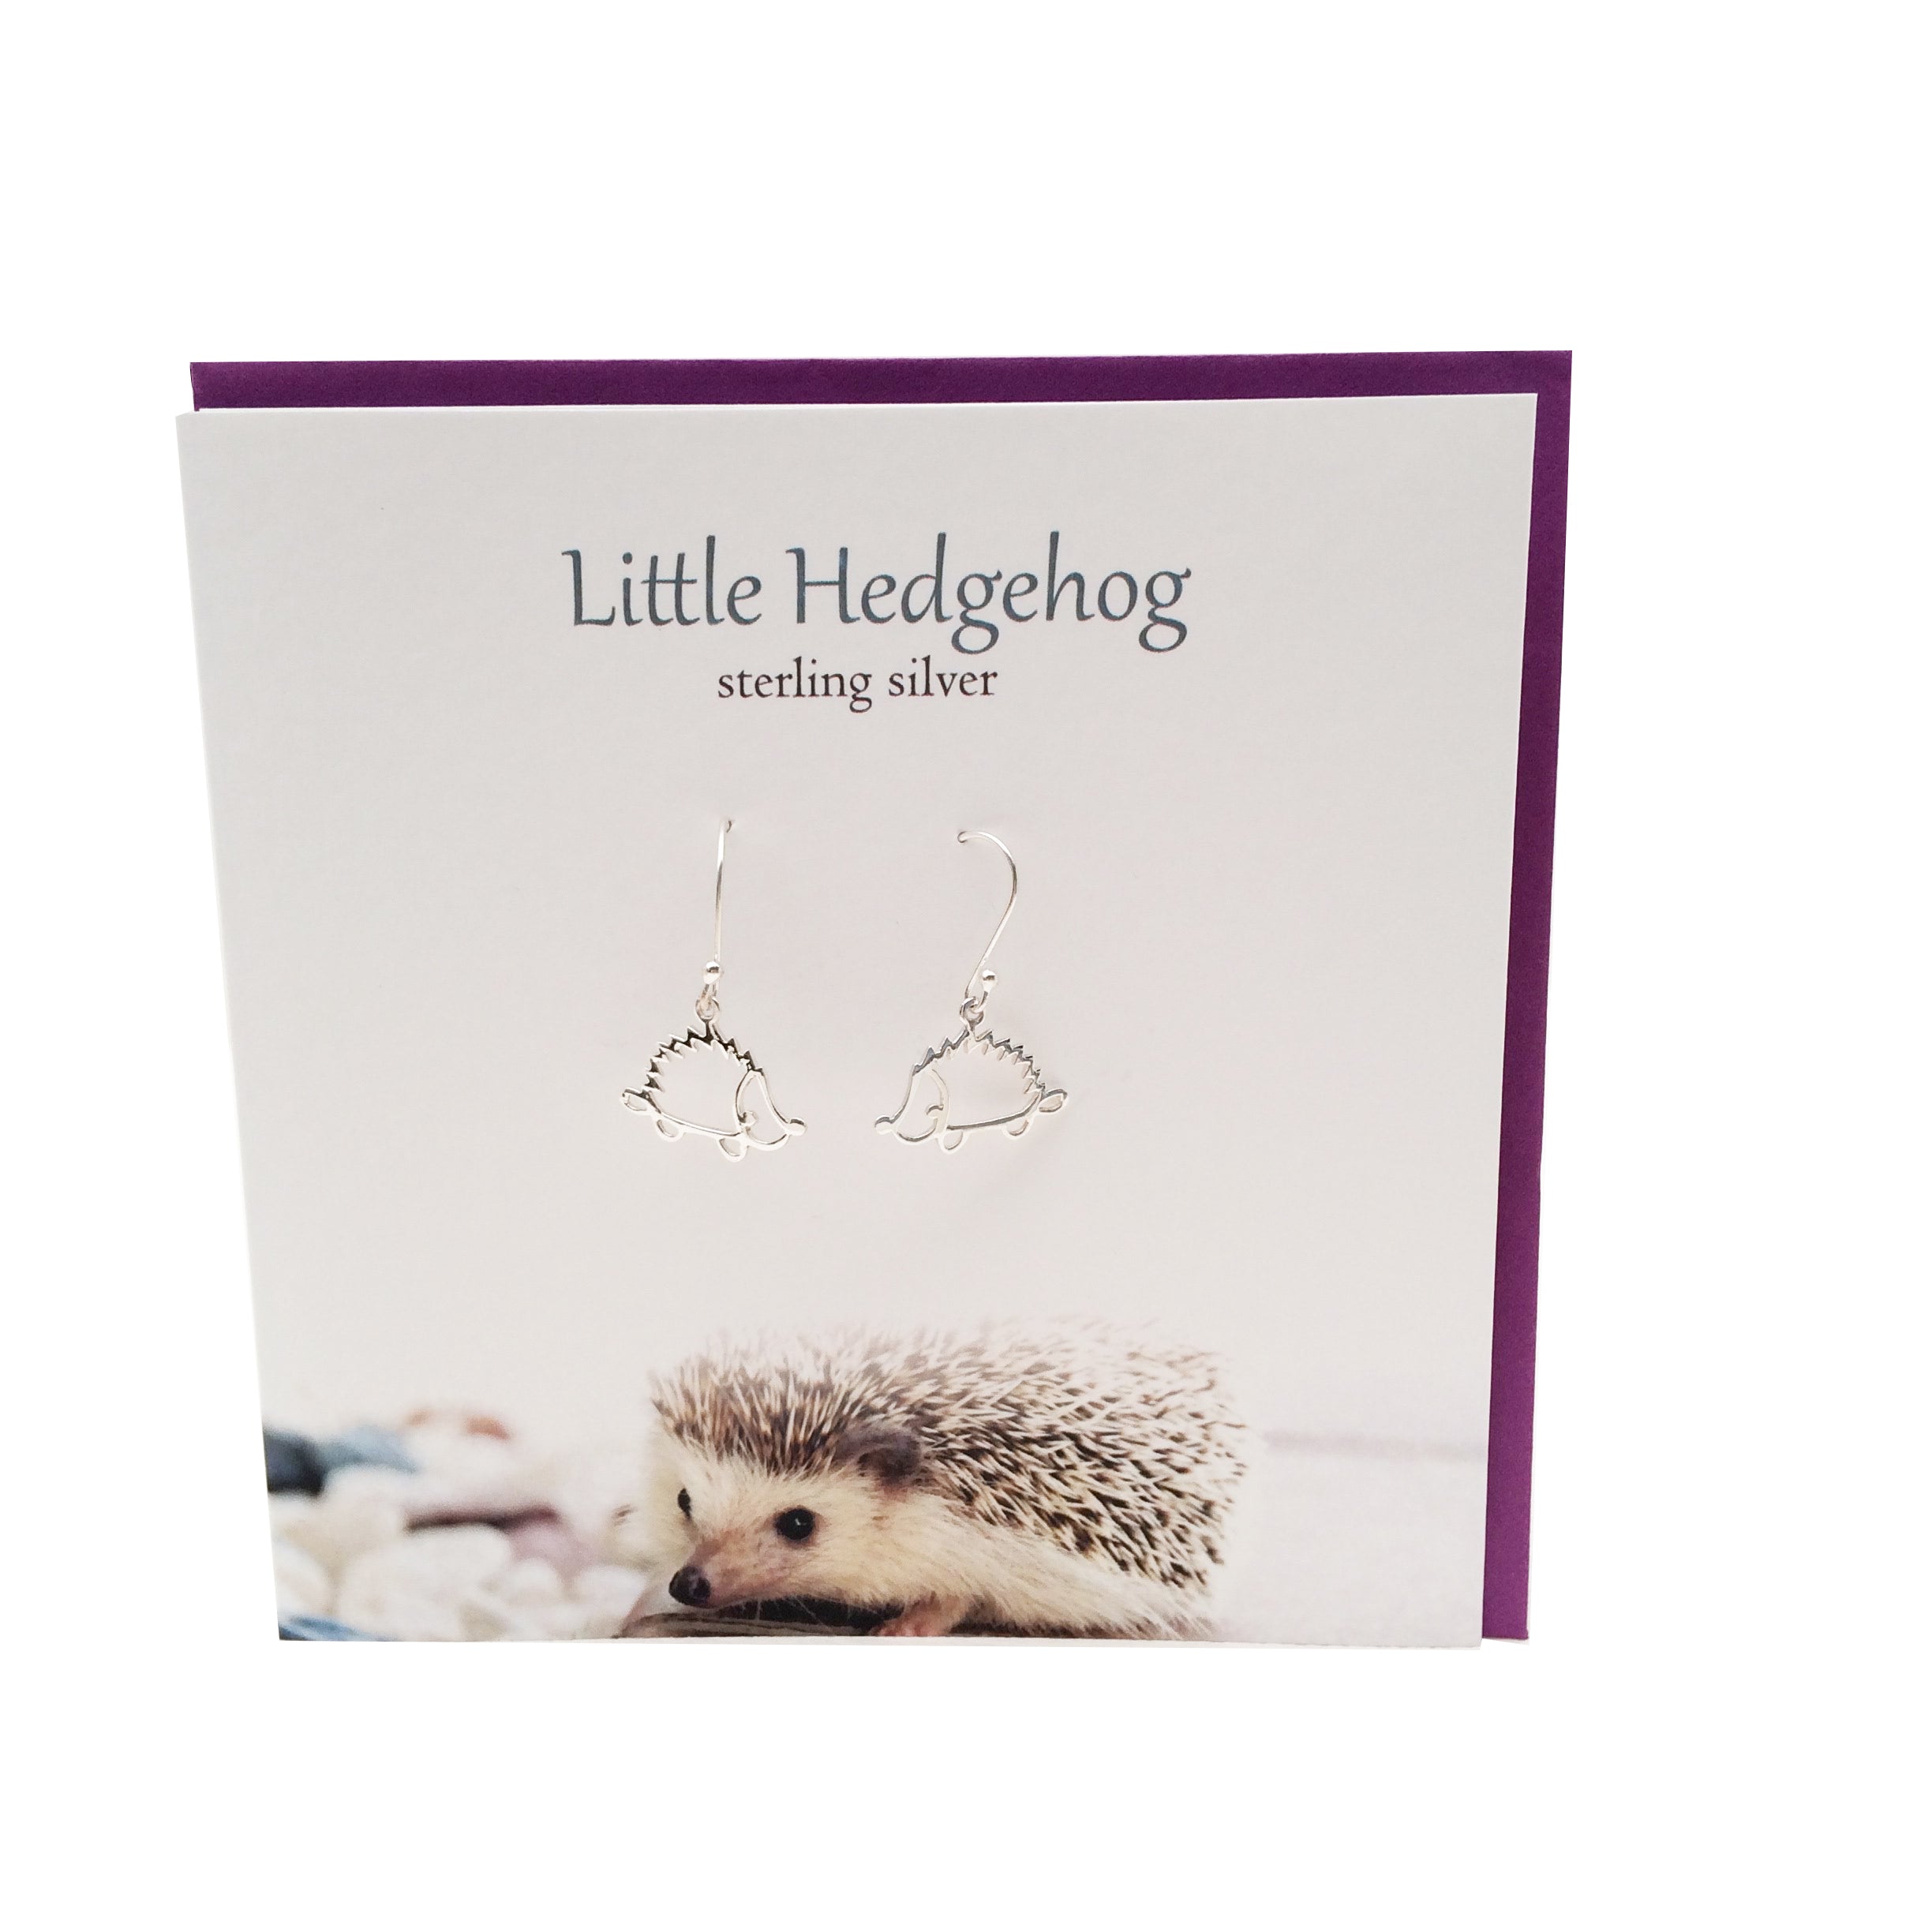 Little Hedgehog sterling silver earrings | The Silver Studio Scotland